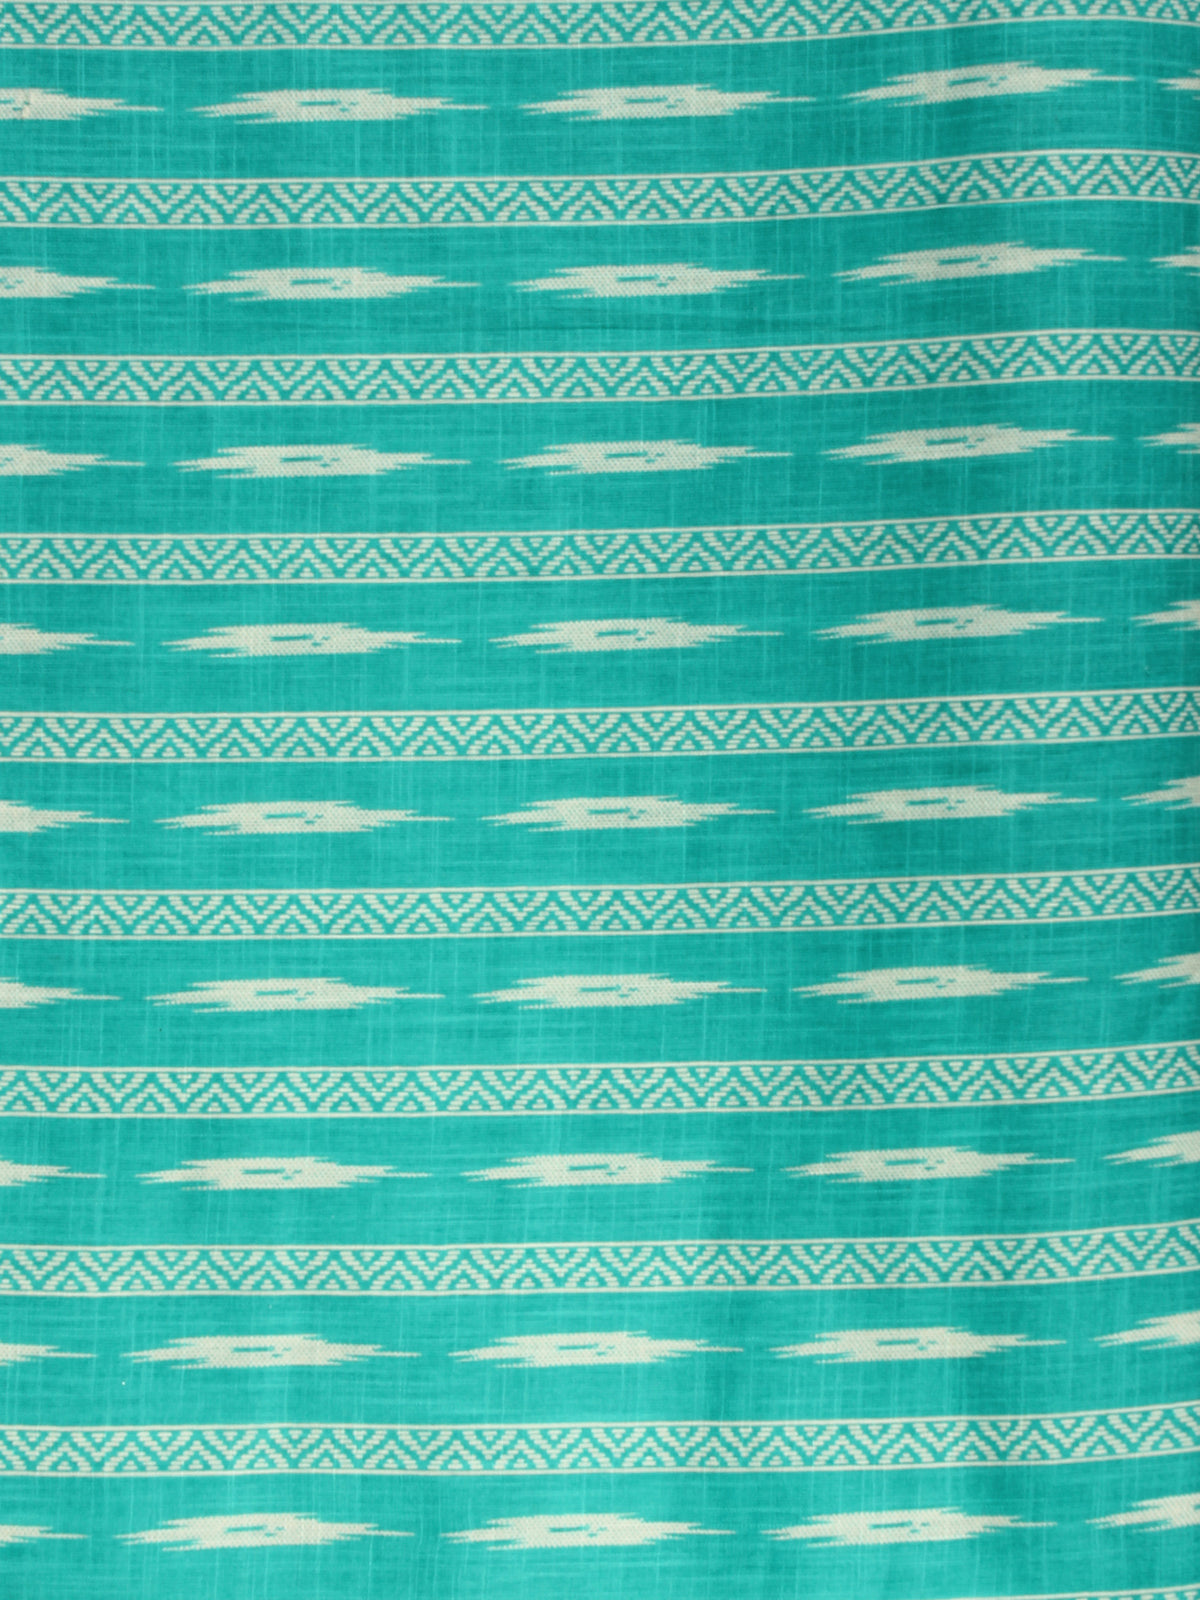 Sea Green White Block Printed Cotton Fabric Per Meter - F001F2194